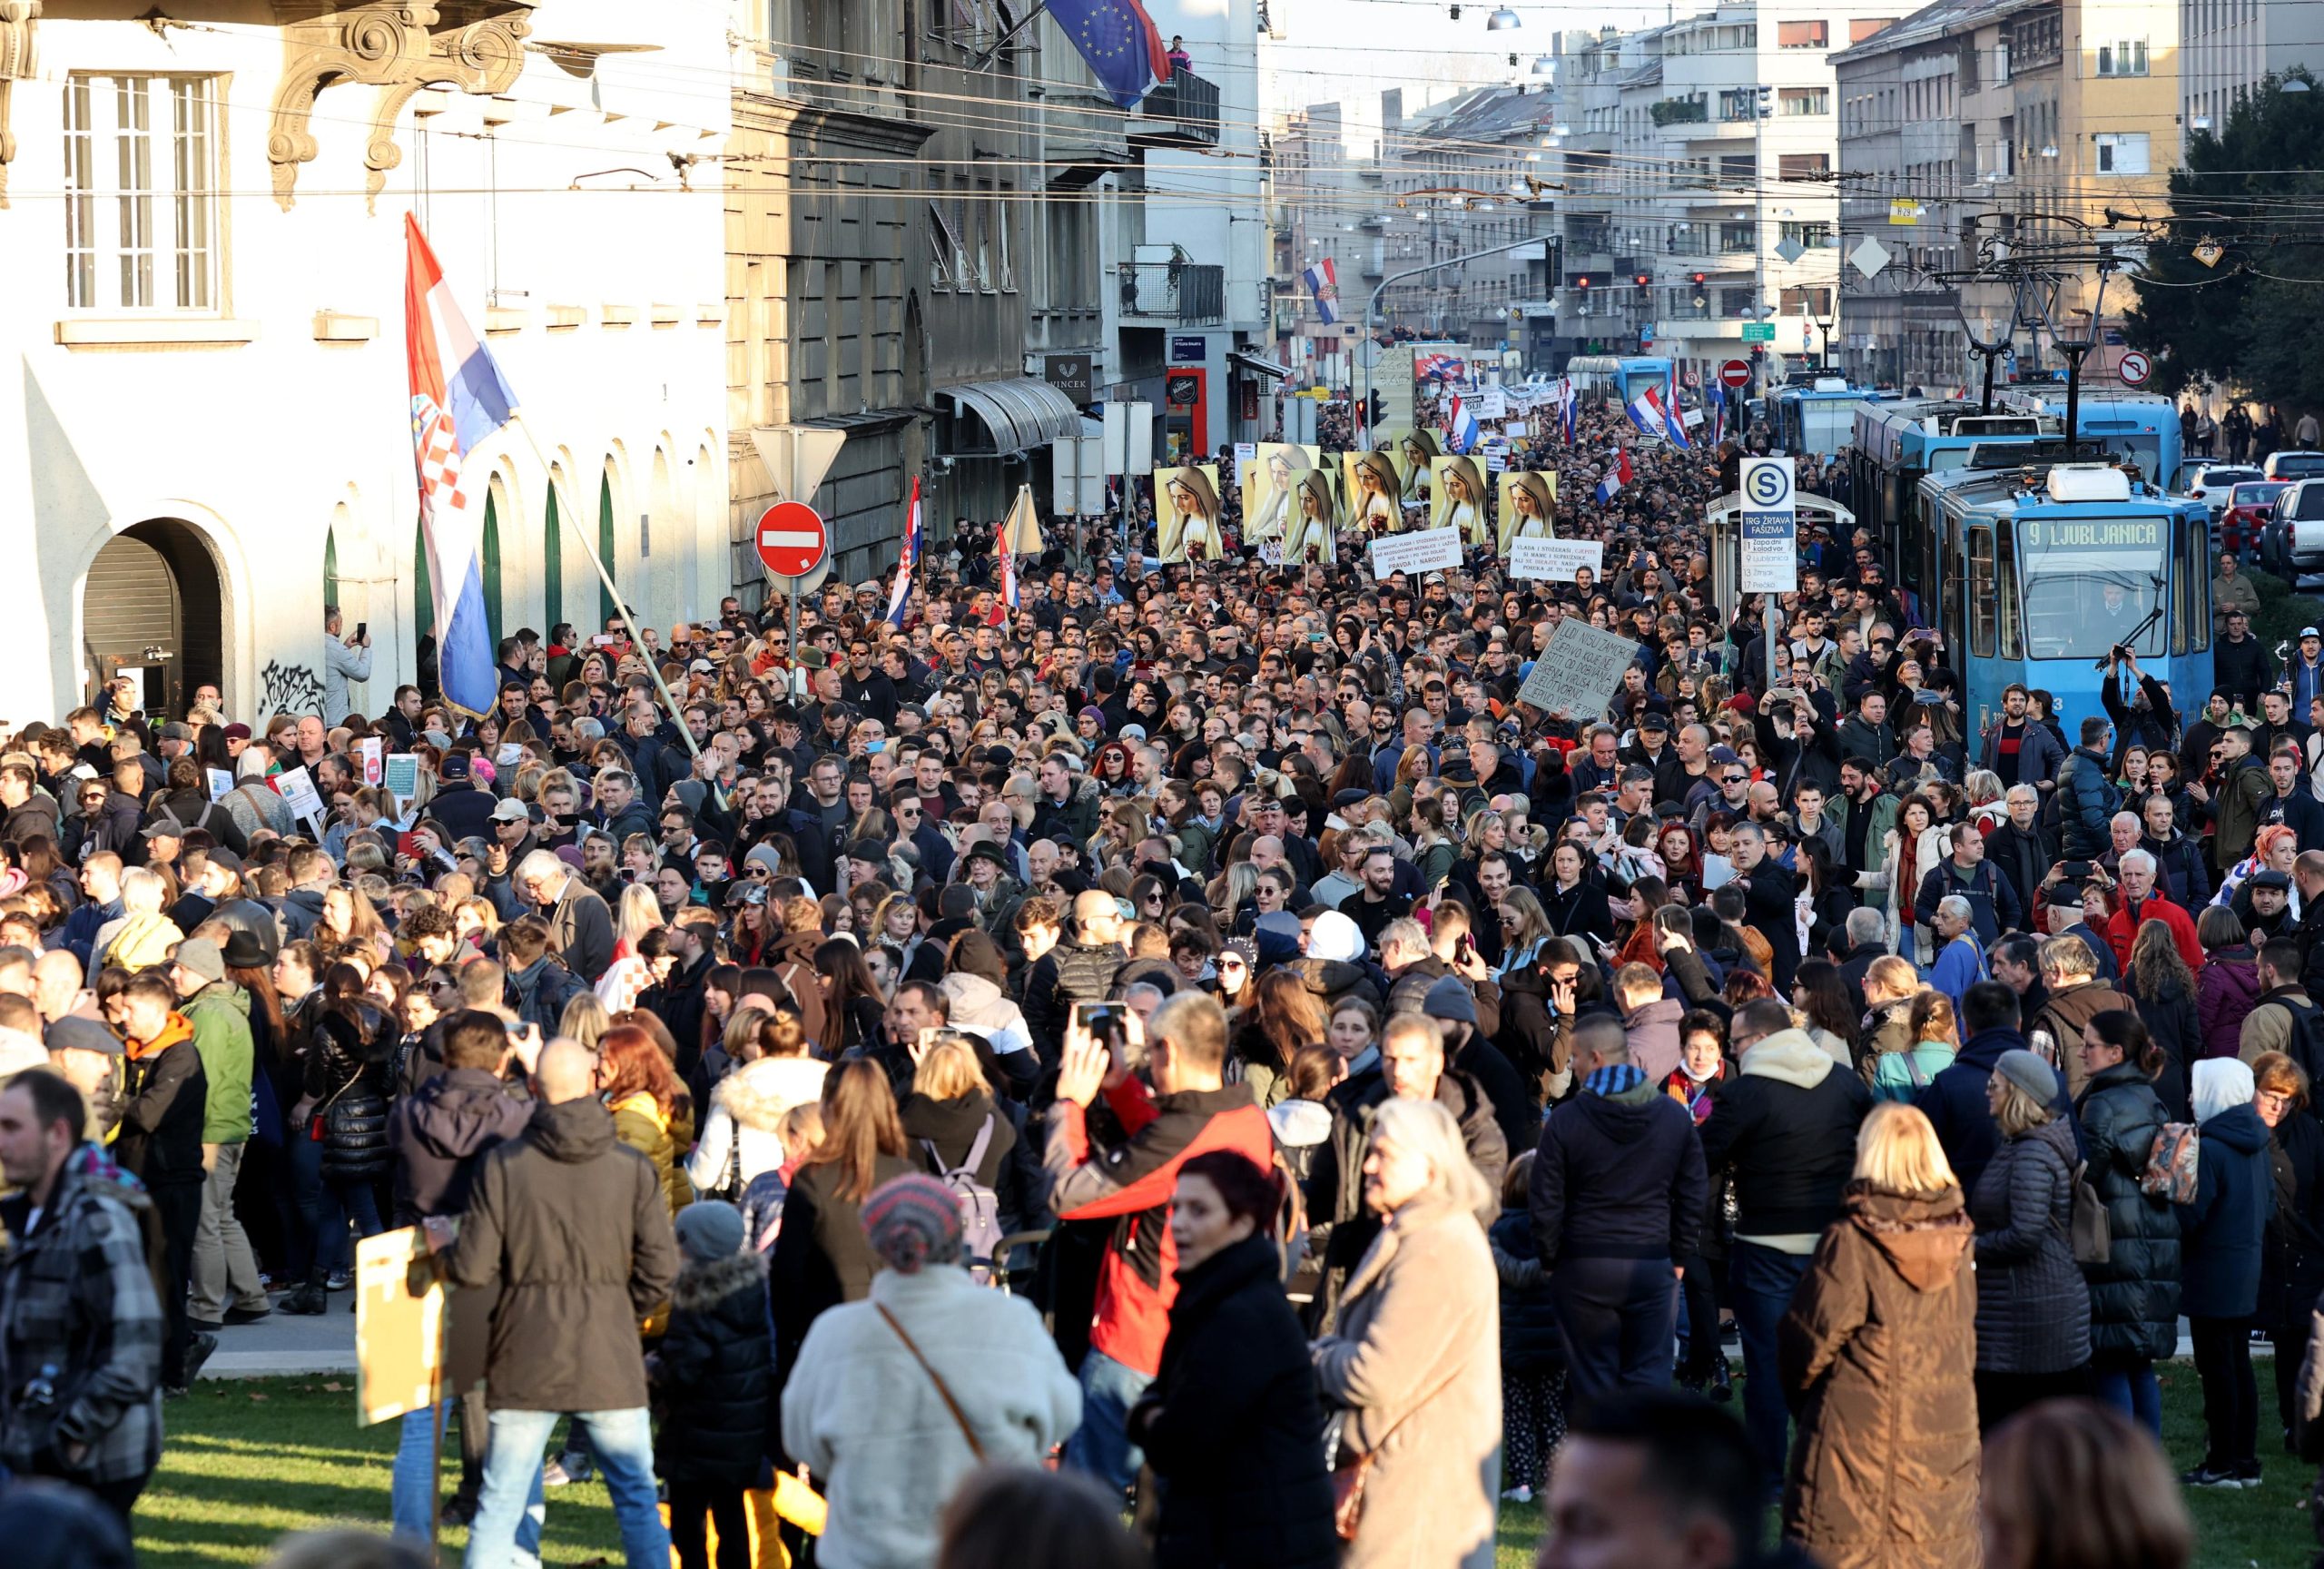 20.11.2021., Zagreb - Gradjanska udruga "Inicijativa prava i slobode" organizirala je prosvjed protiv COVID potvrda pod nazivom "ZAjedno za Slobodu" koji je krenuo s lokacije Trga zrtava fasizma te je odrediste kolone na Trgu bana Josipa Jelacica.